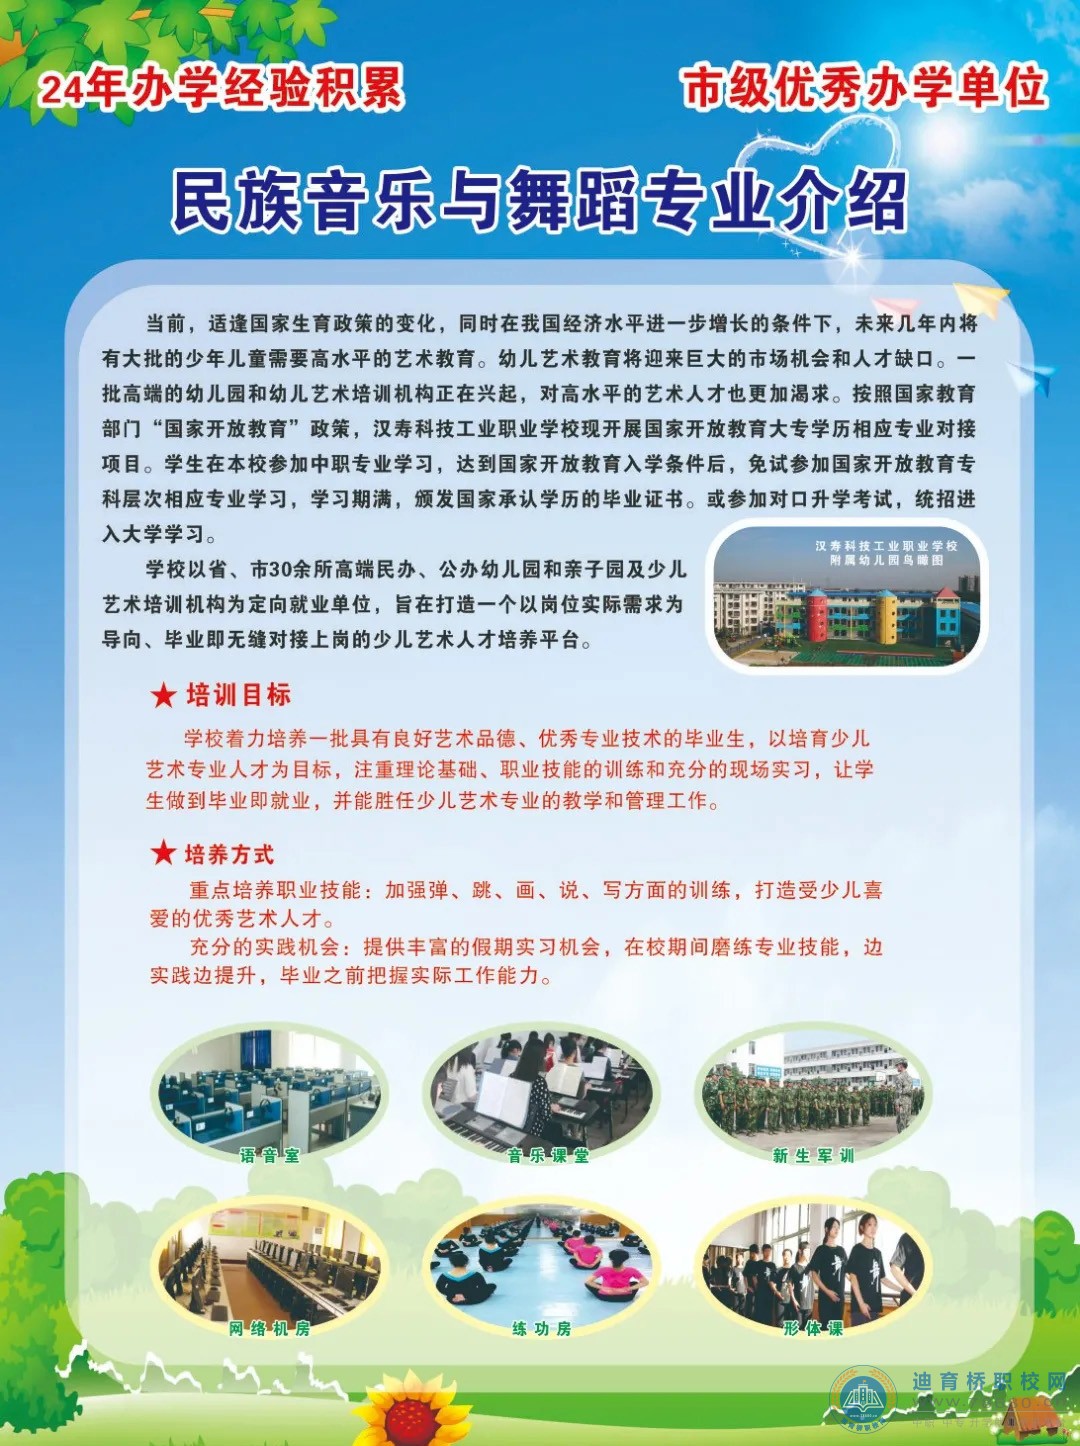 汉寿县科技工业职业技术学校2021年招生简章